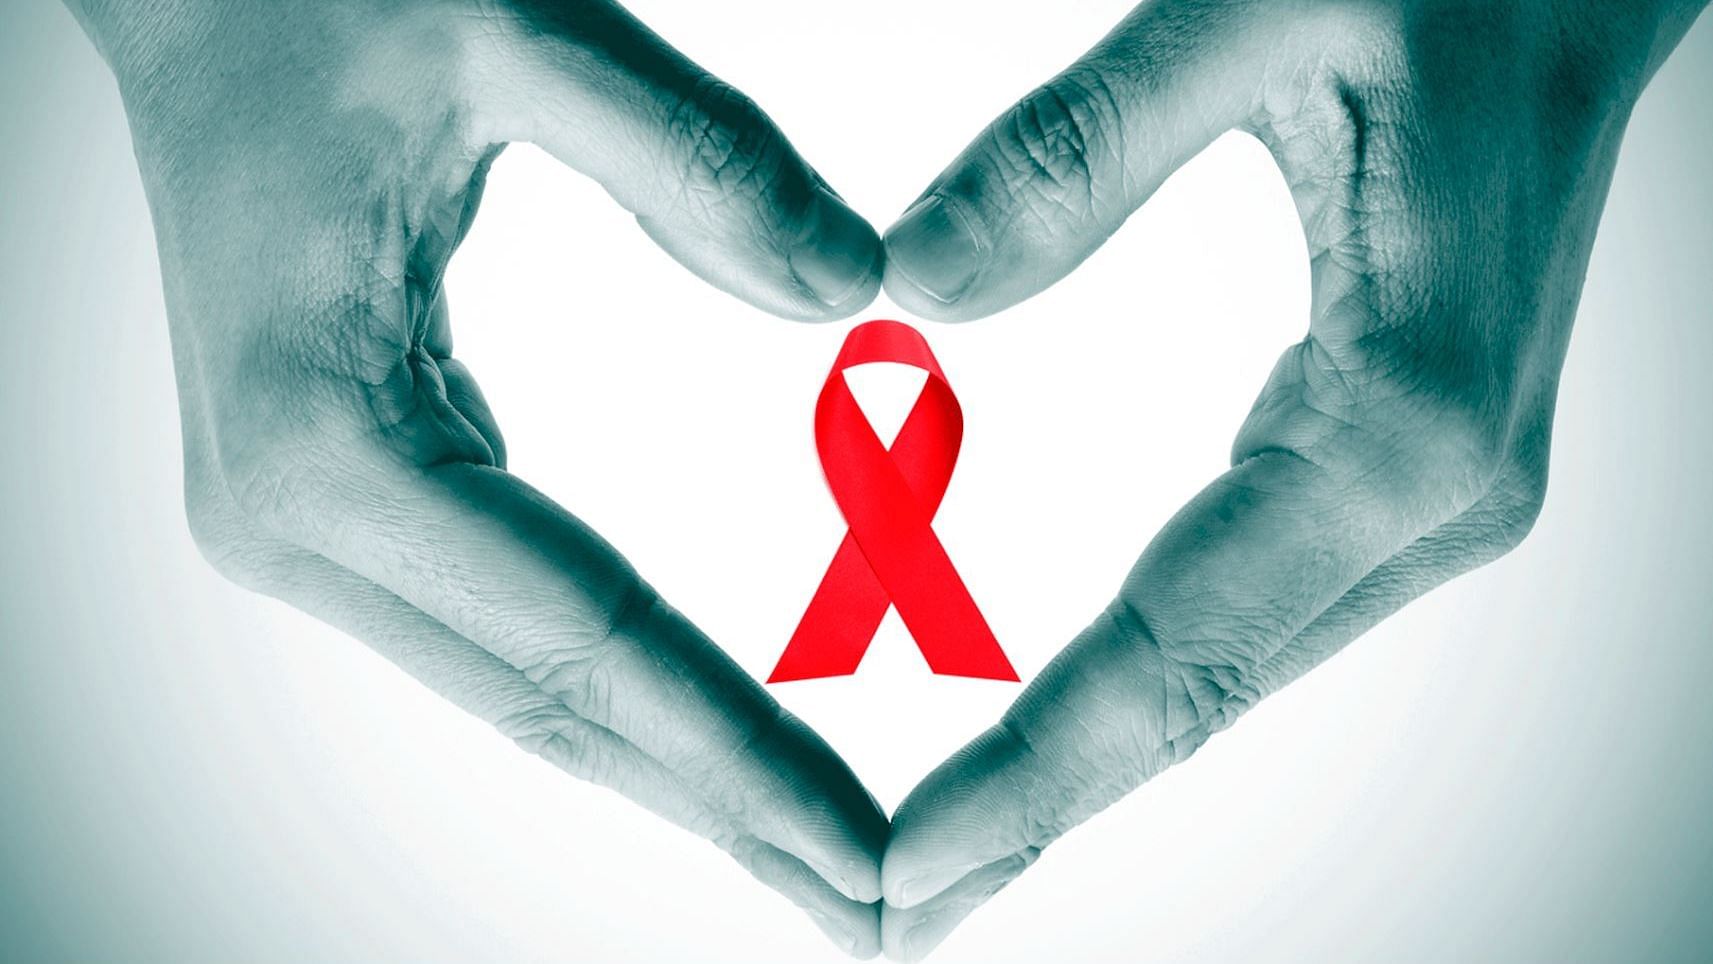 एचआईवी फैलता कैसे है? क्या HIV-AIDS की रोकथाम के लिए कोई वैक्सीन मौजूद है?